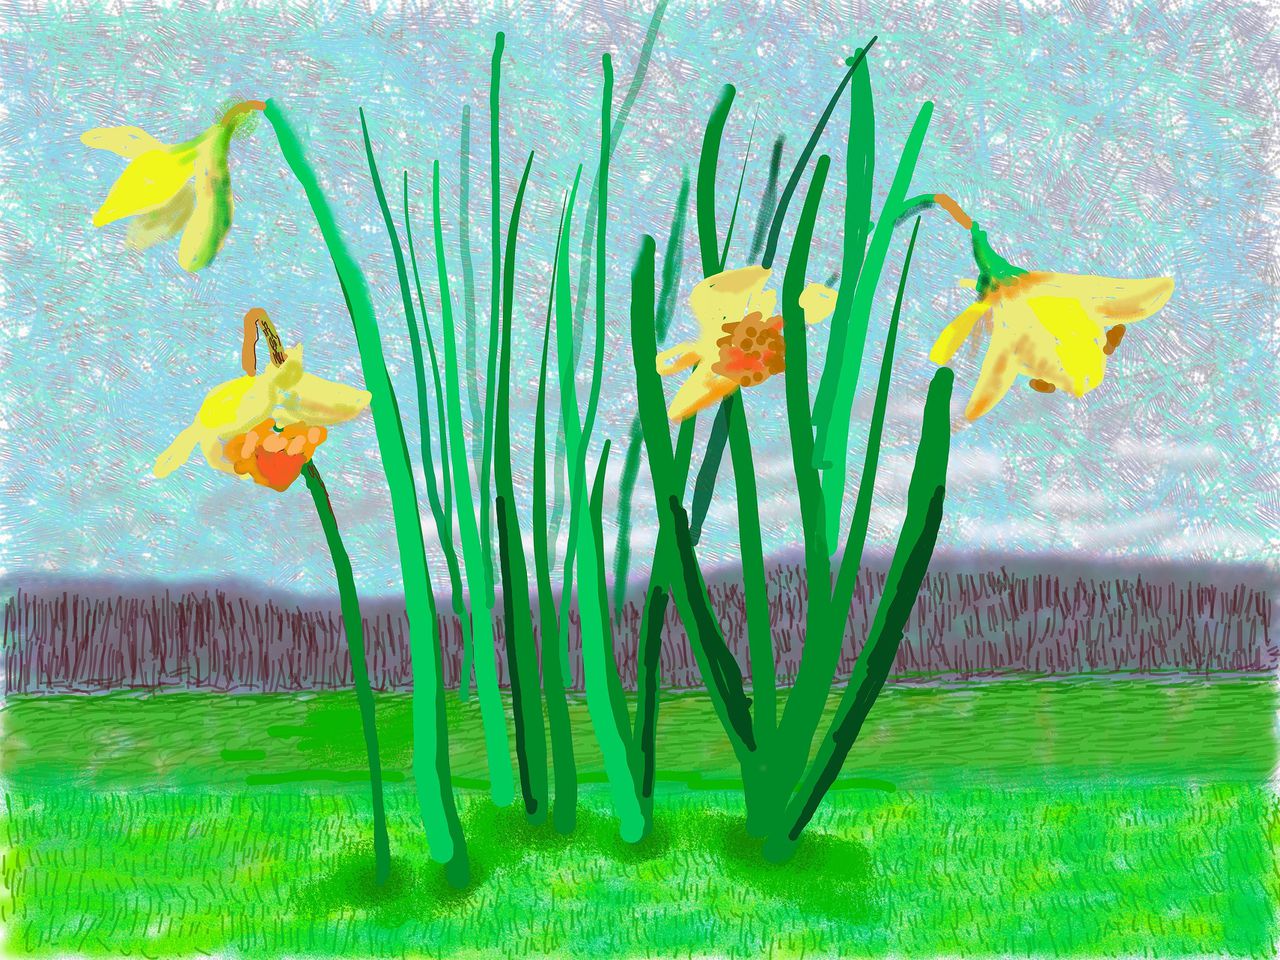 David Hockney: ‘Vergeet het nooit, de lente gaat door’, ook in 2021 